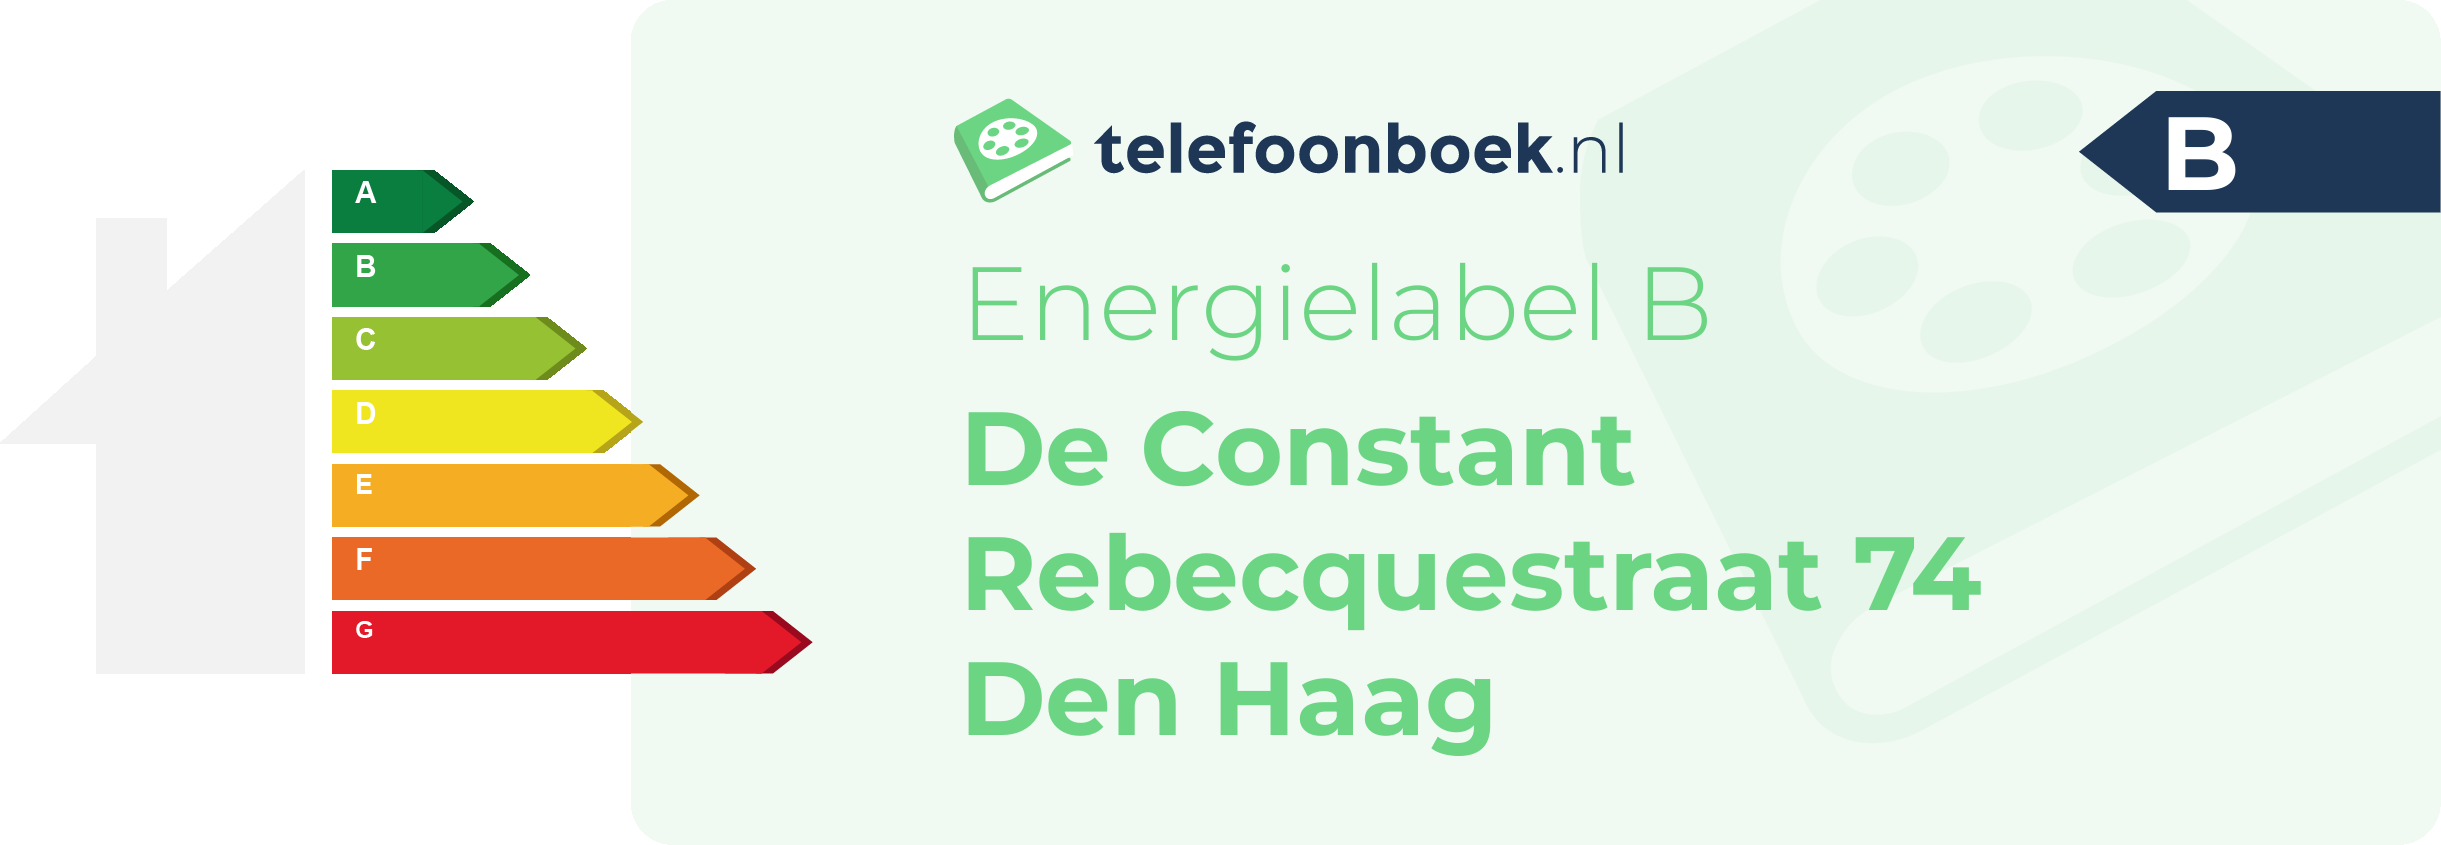 Energielabel De Constant Rebecquestraat 74 Den Haag